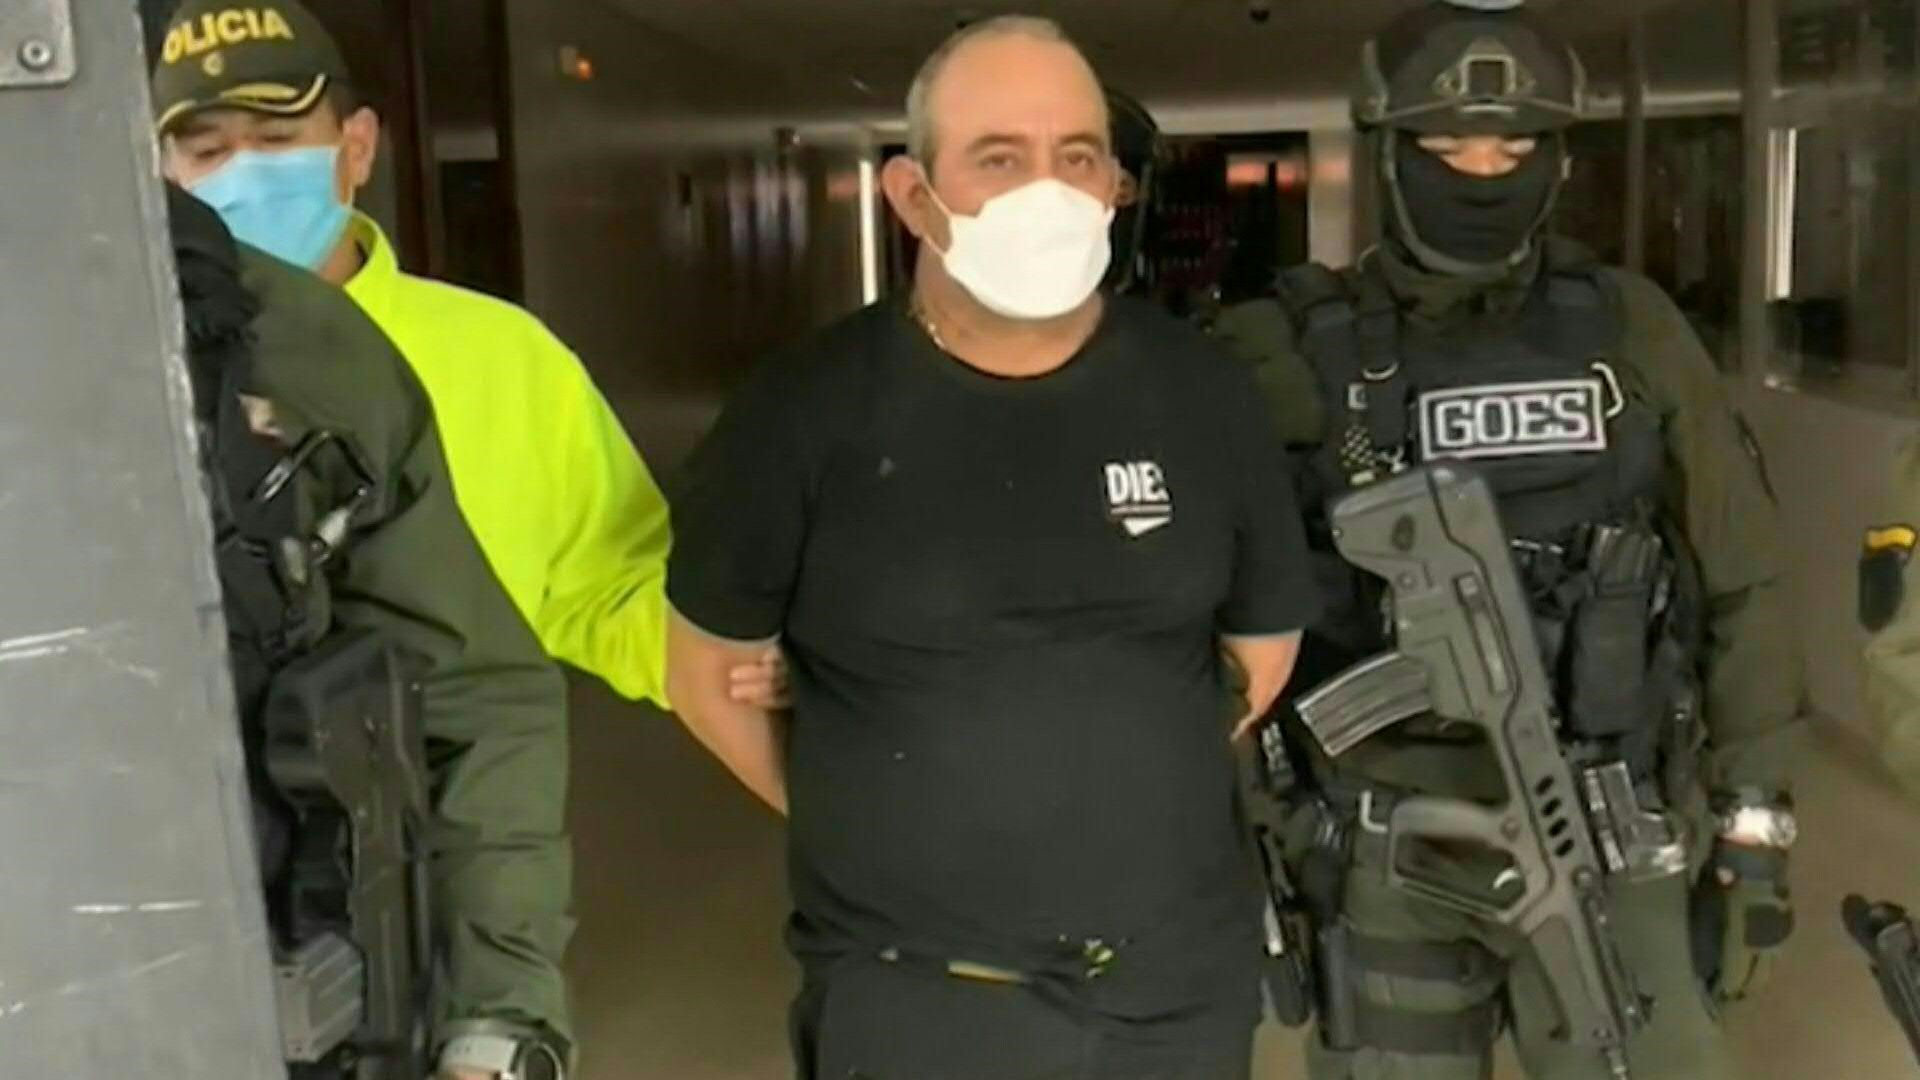 Colombia extraditó el miércoles a Estados Unidos al principal capo de la droga conocido como "Otoniel", requerido por una corte de Nueva York por narcotráfico, informó el presidente, Iván Duque.